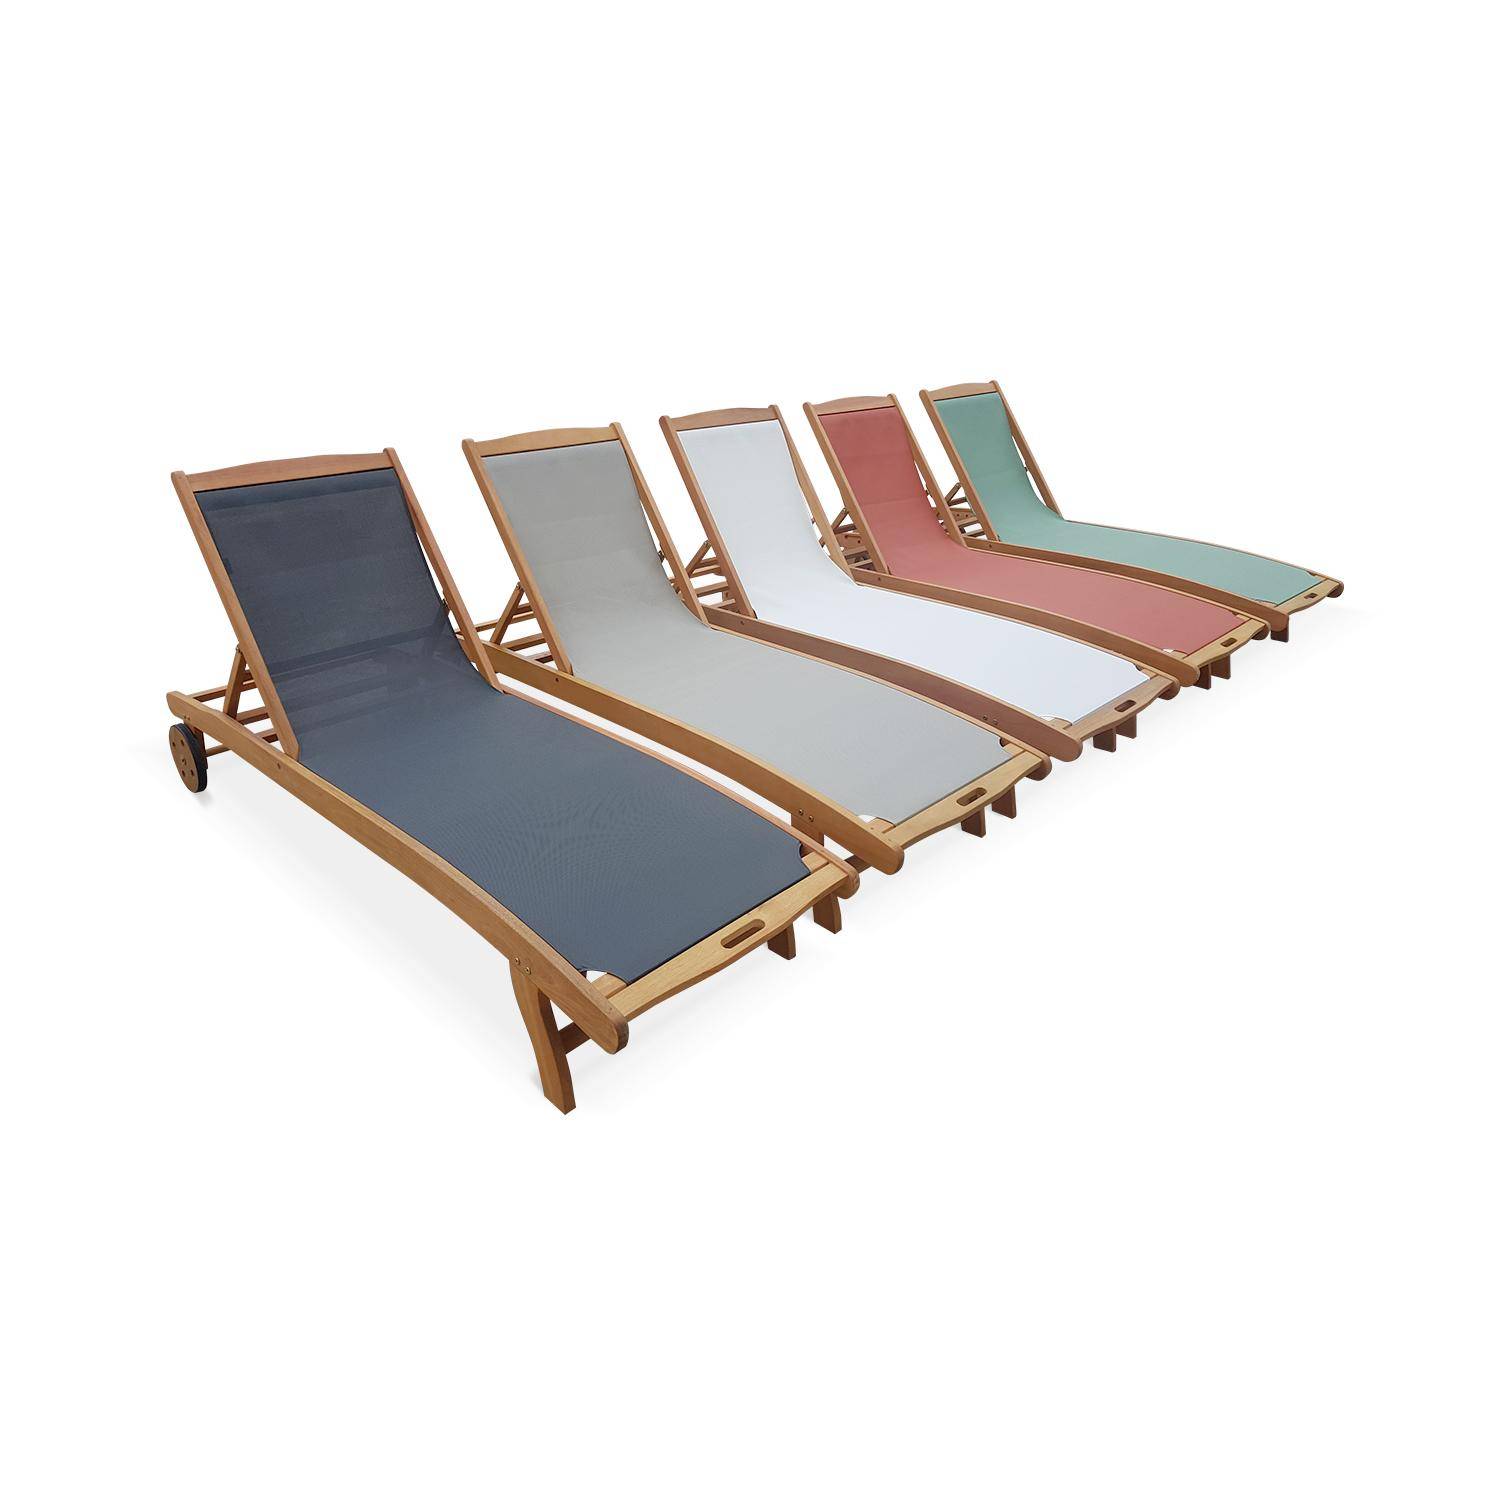 2er Set Holz Sonnenliegen - Marbella Graugrün - 2 Liegestühle aus geöltem FSC-Eukalyptusholz und Textilene in Graugrün Photo7